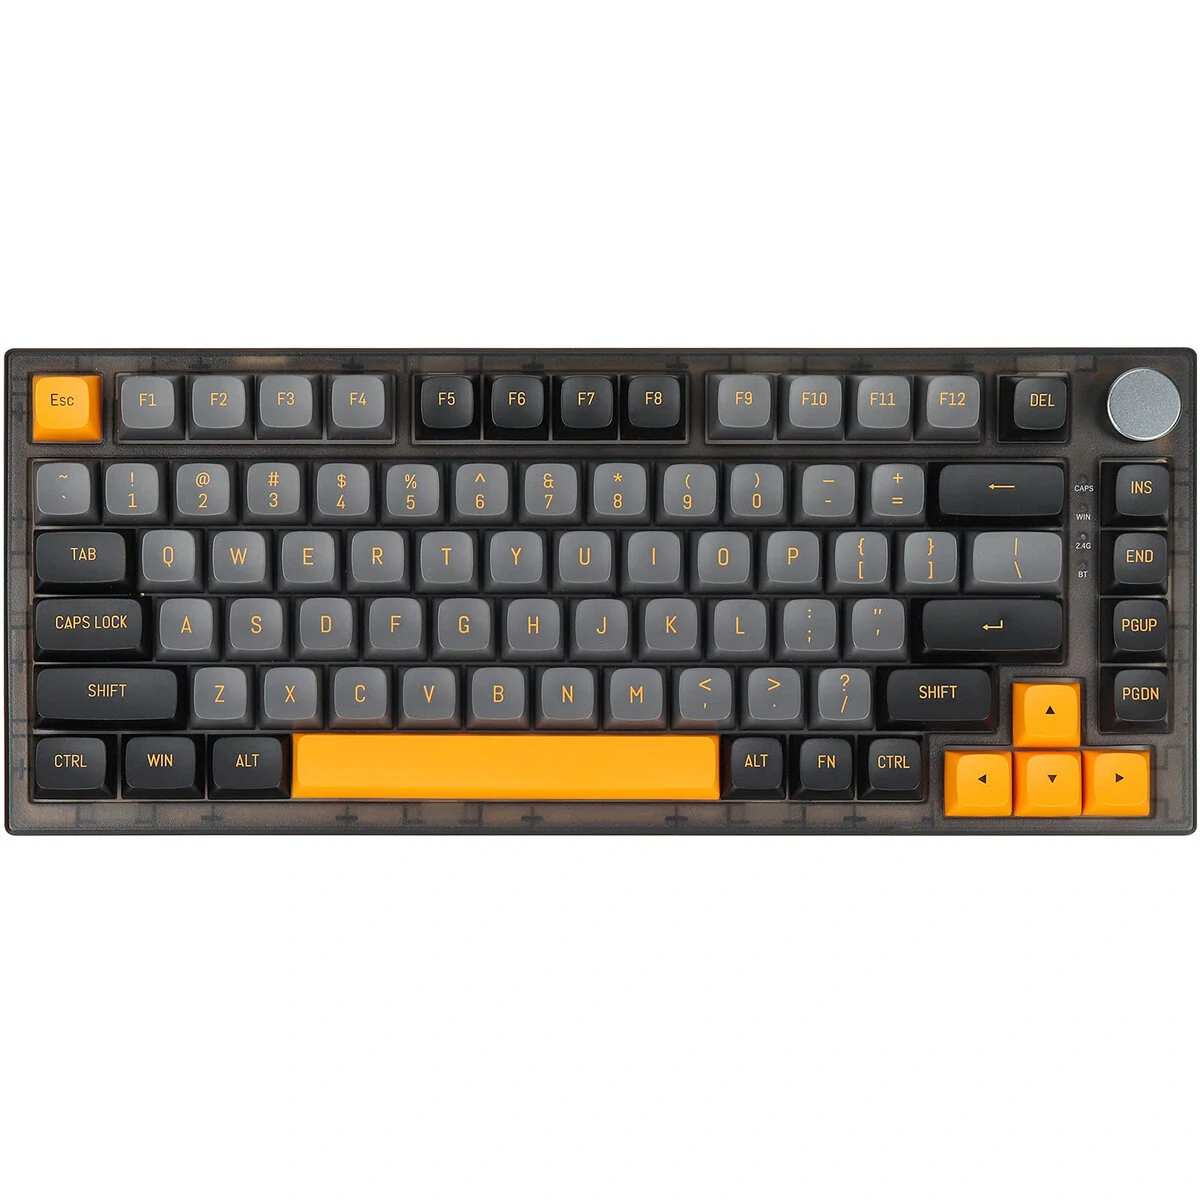 FEKER IK75 Ultra Keyboard Black Case Banggood Coupon Promo Code [US Warehouse]